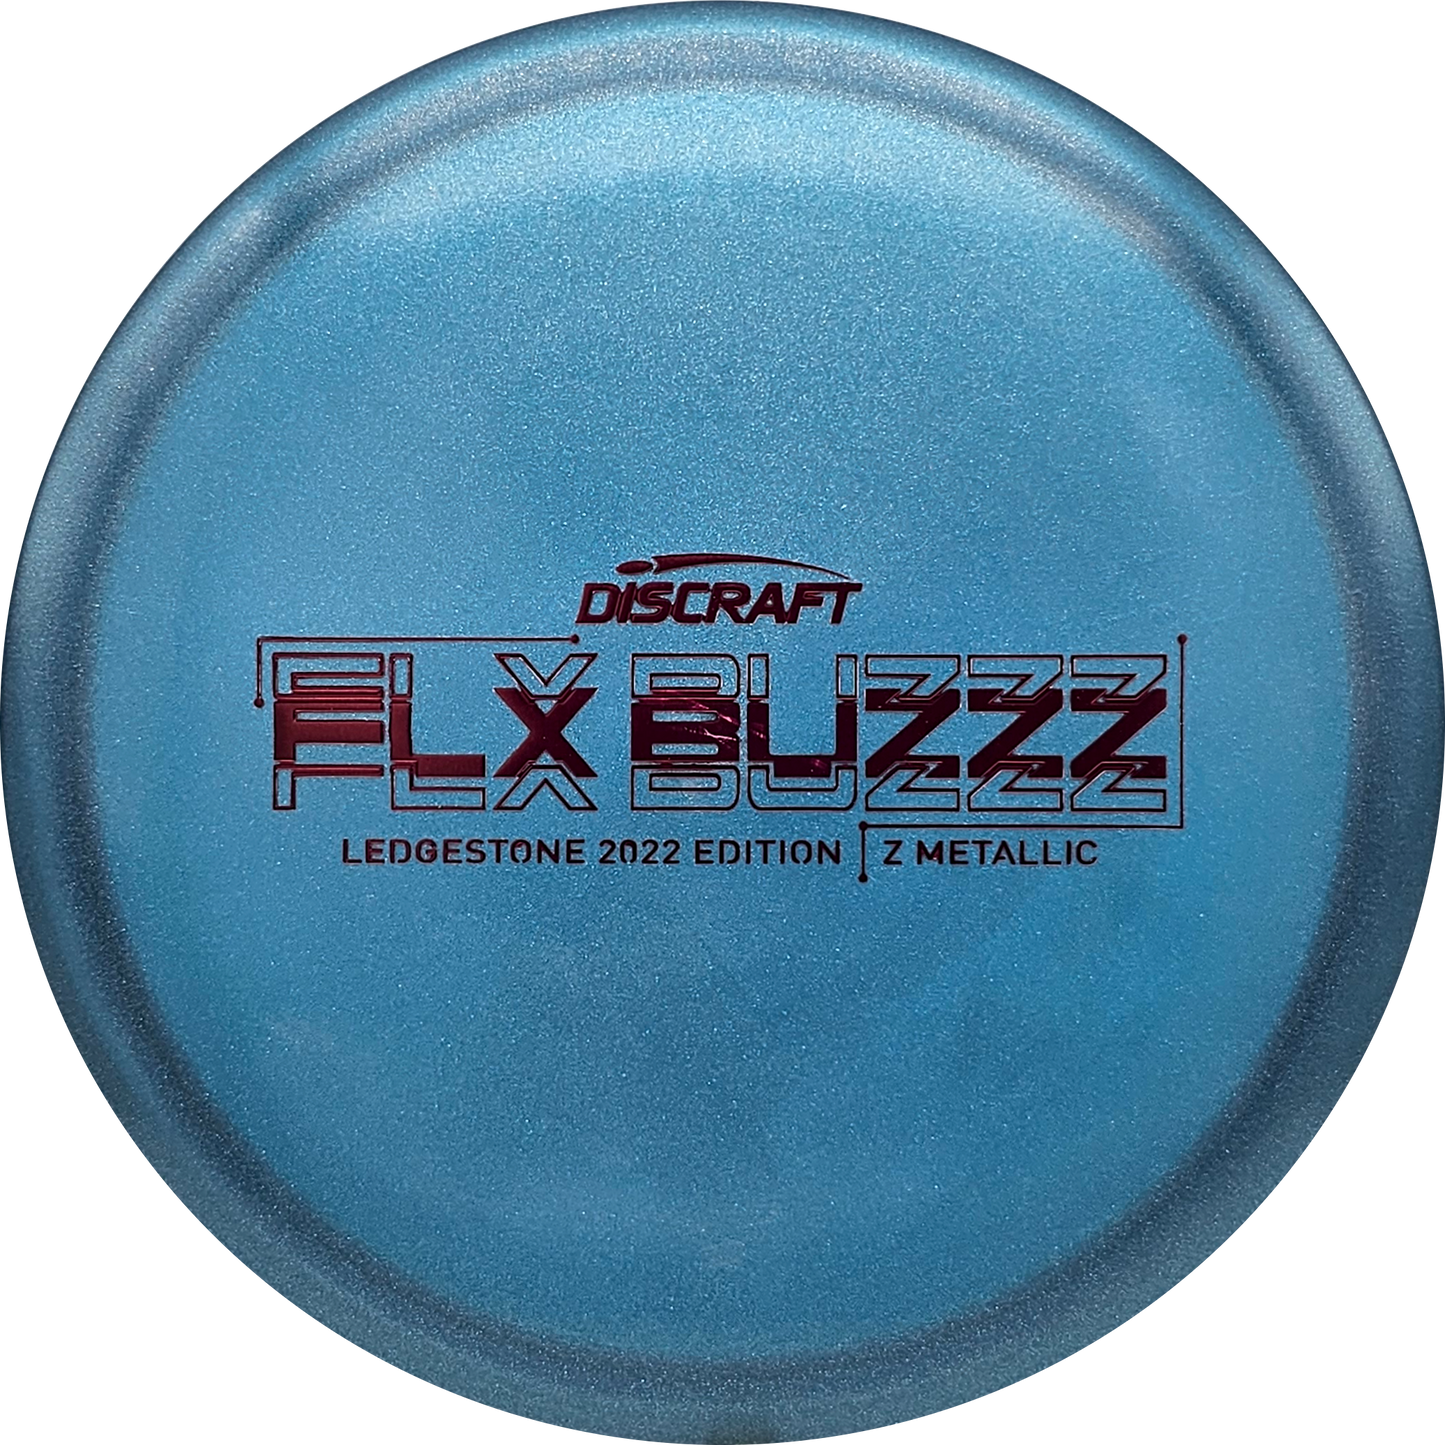 Discraft FLX Z Metallic Buzzz - Ledgestone 2022